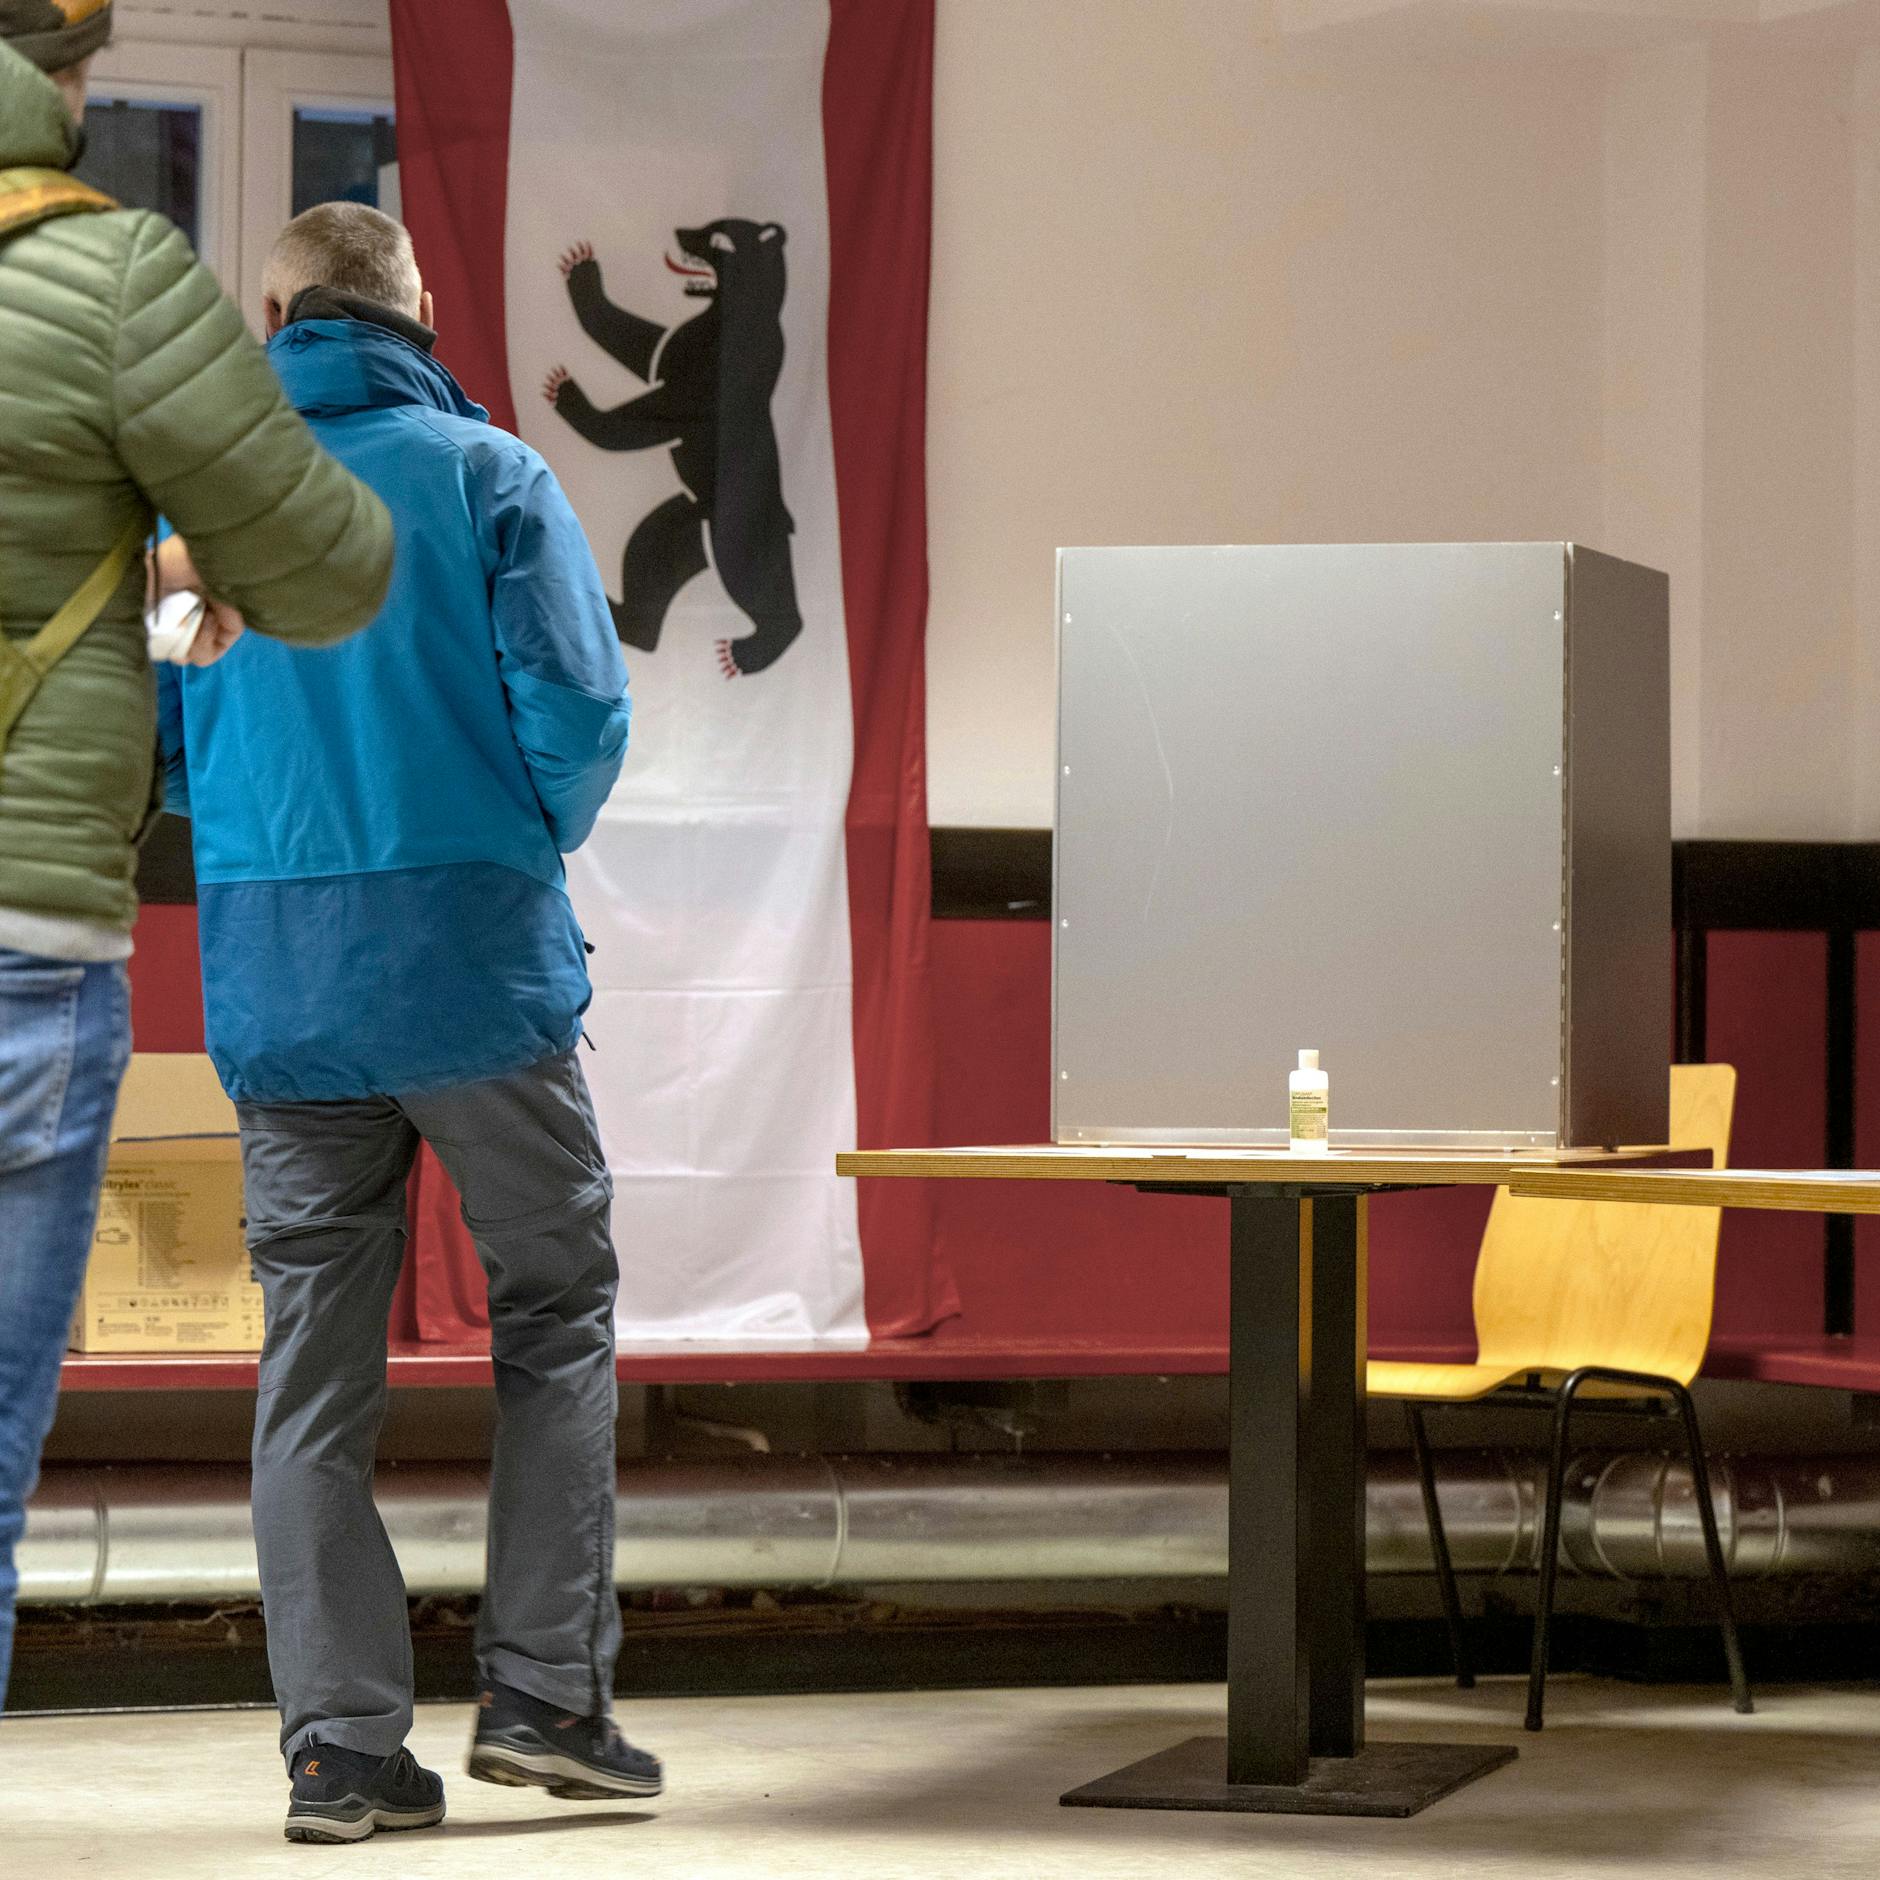 Image - Wiederholungswahl in Berlin: Mein Viertel in Pankow gehört zu den Chaos-Wahlkreisen